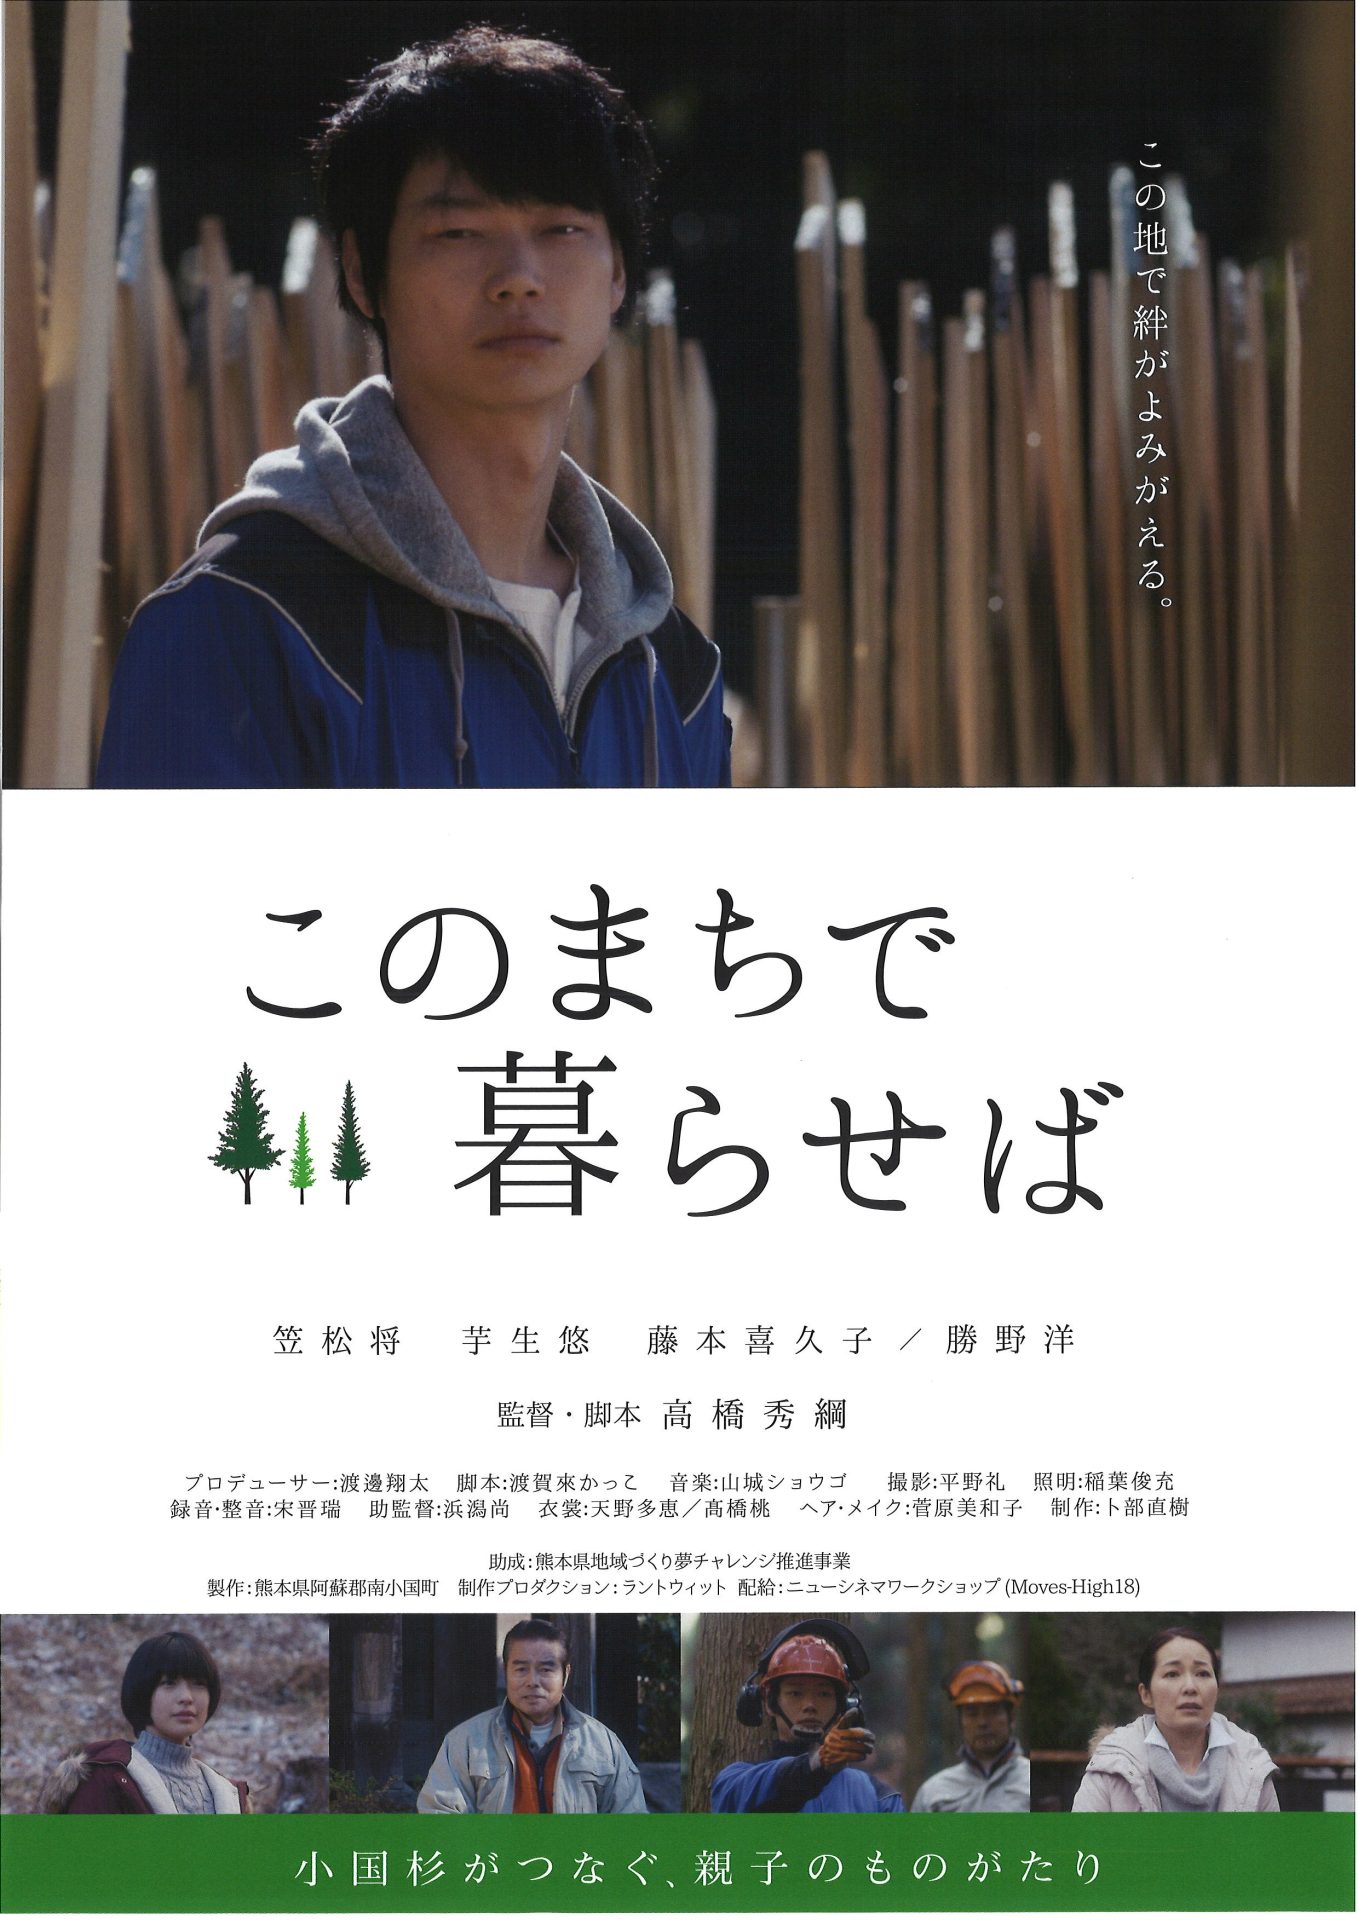 熊本県南小国町・映画『このまちで暮らせば』ロードショー | 地域のトピックス